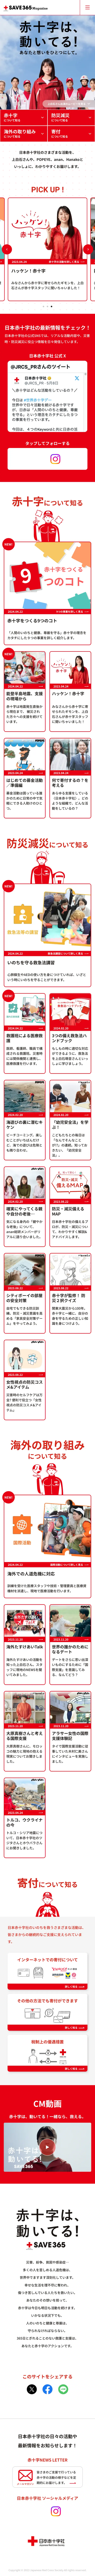 SAVE365Magazine | 日本赤十字社は365日、動き続けています。のモバイルサイズの画像